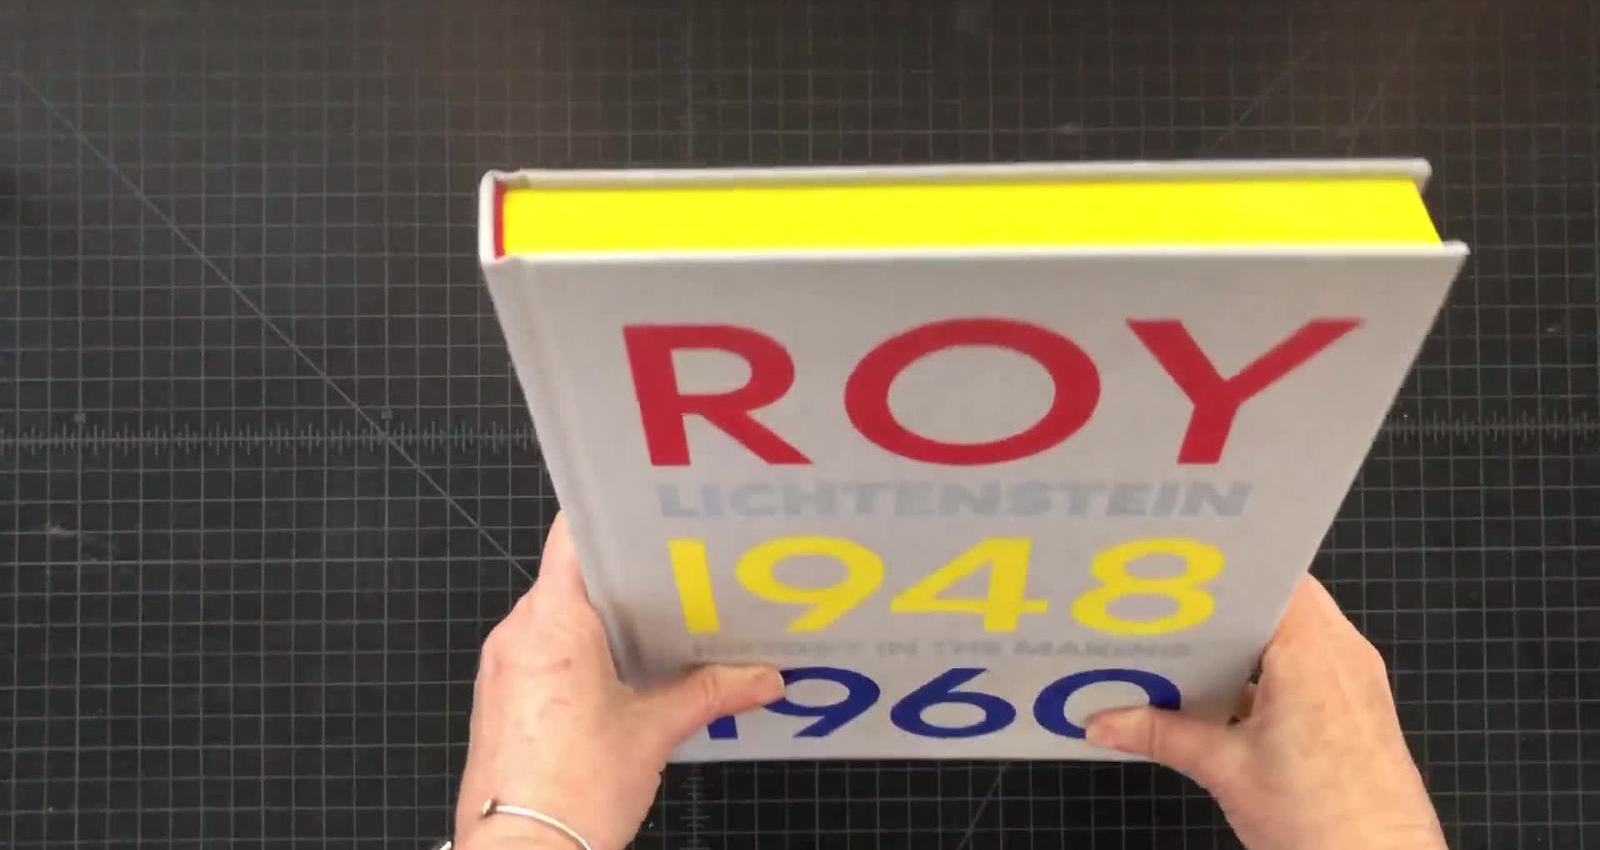 Roy Lichtenstein: History in the Making, 1948–1960